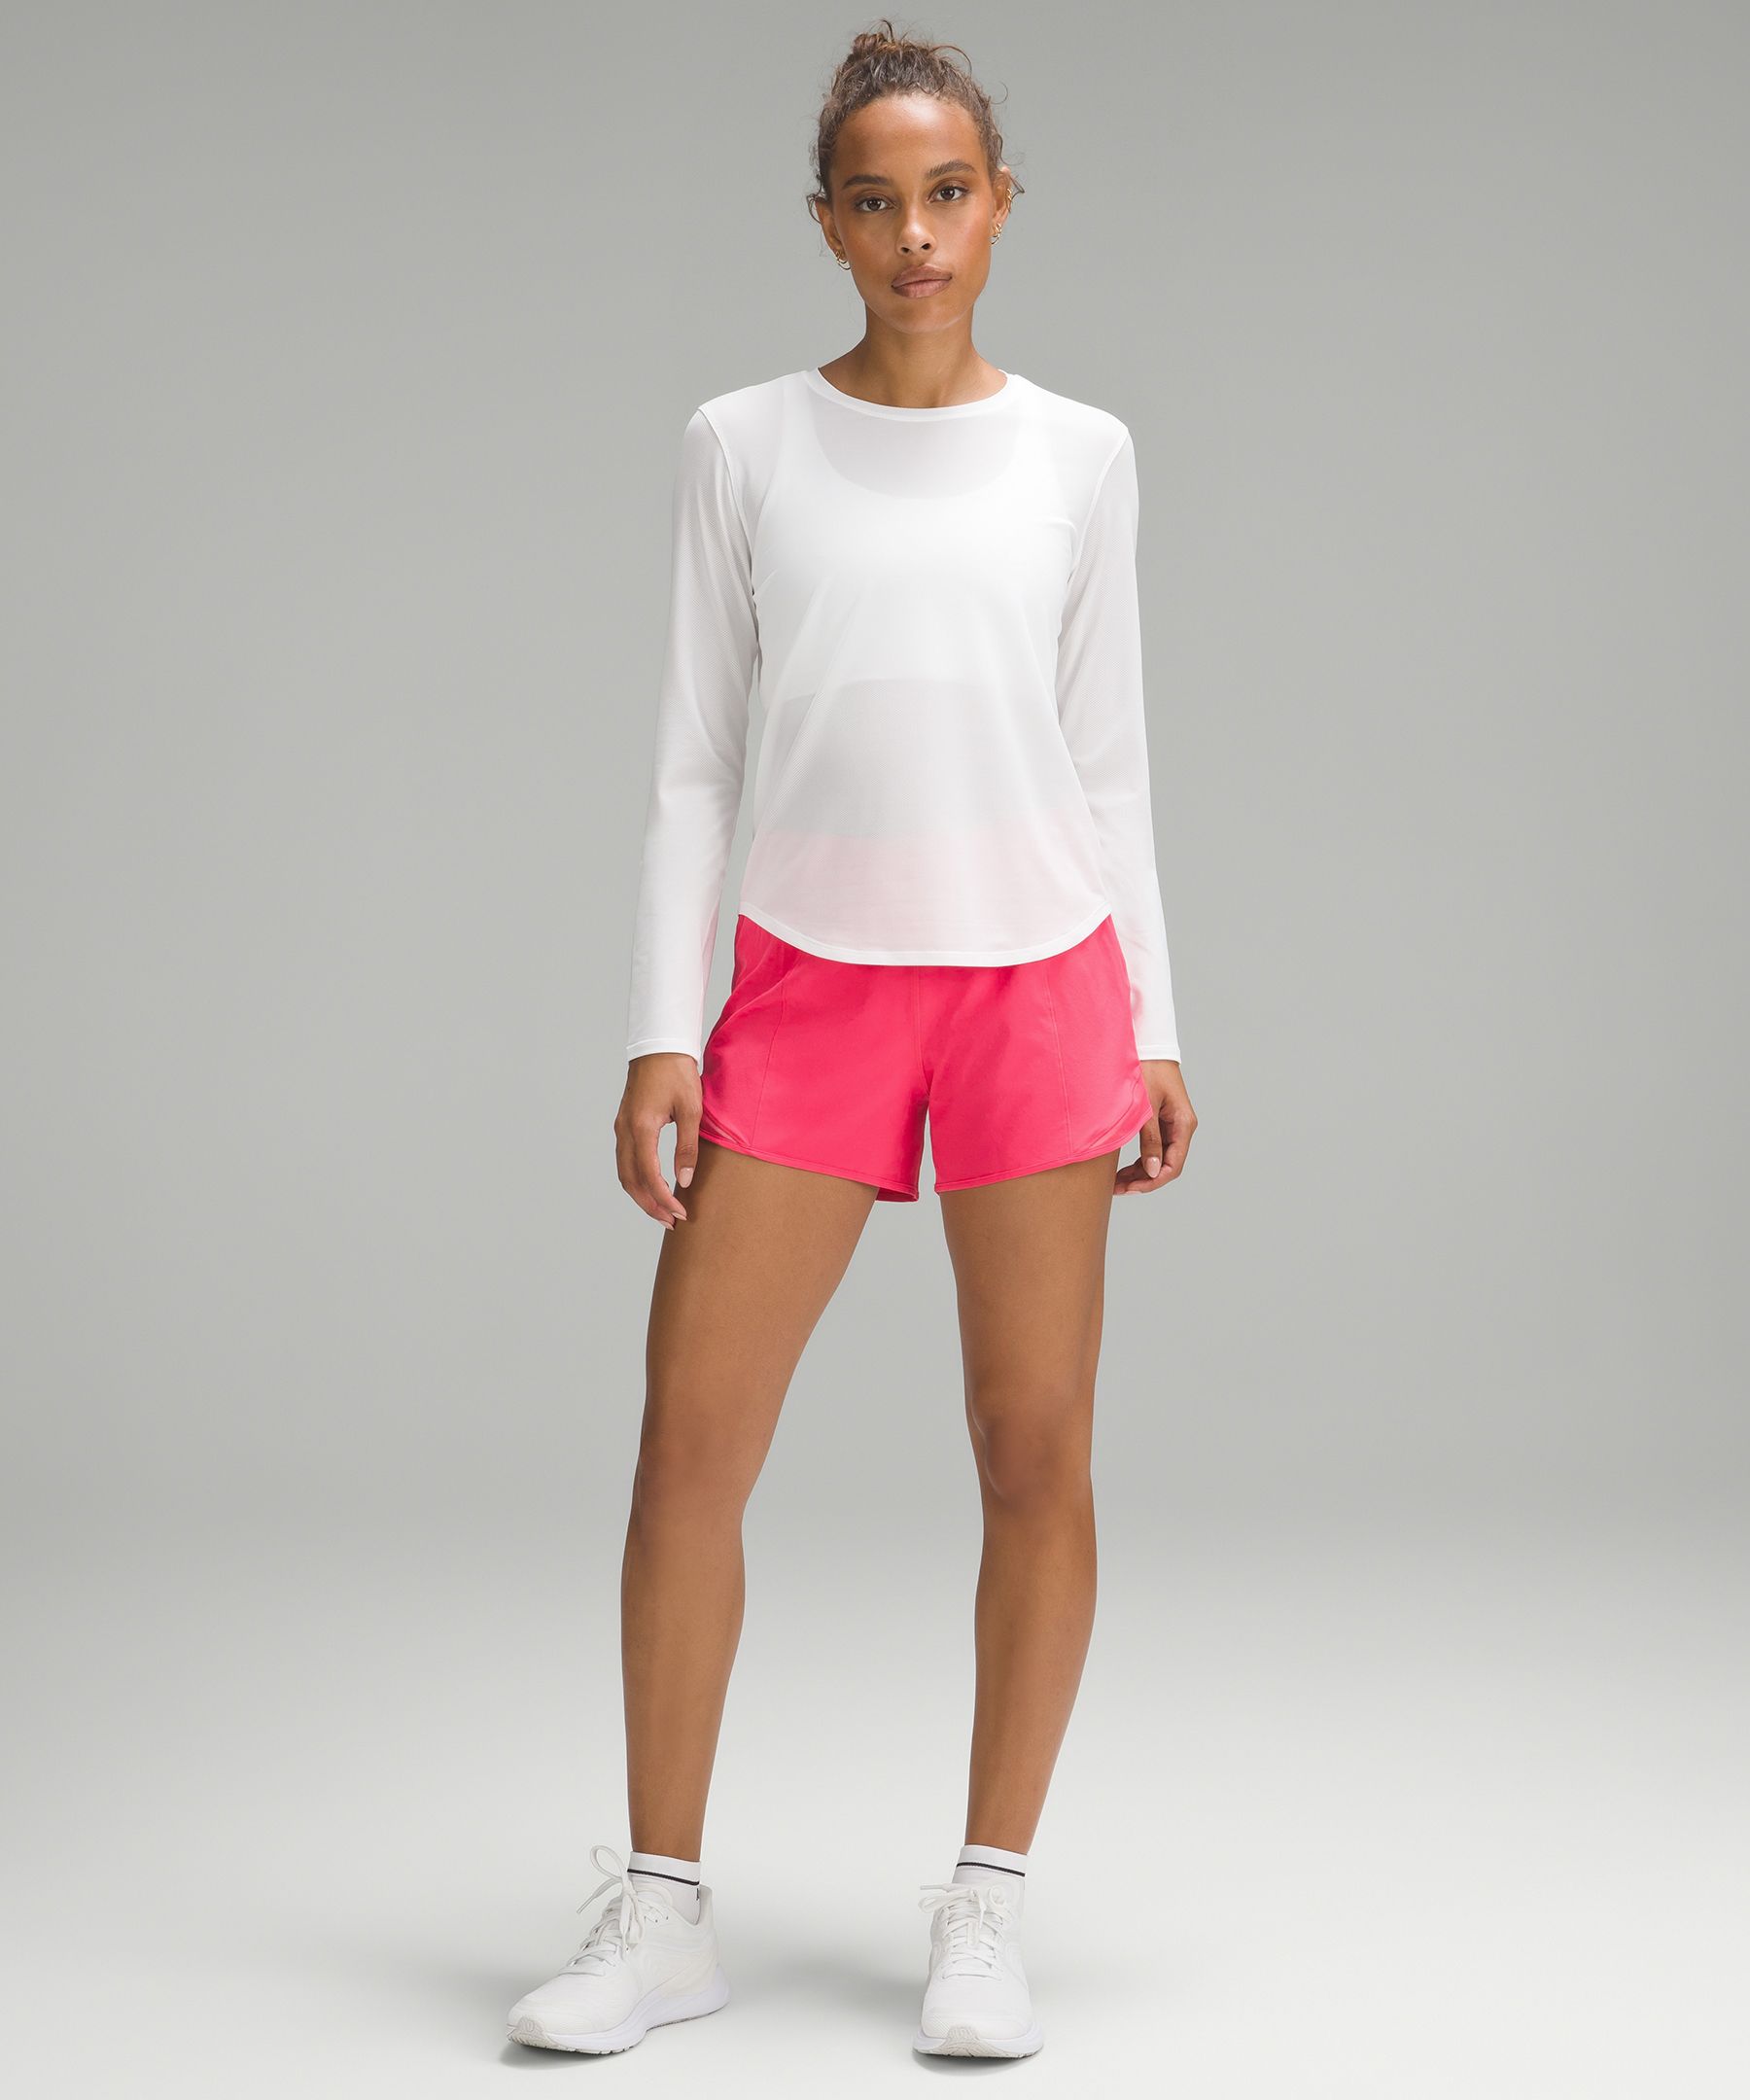 Lululemon Womens Pull On Athletic Shorts White Size 8 - Shop